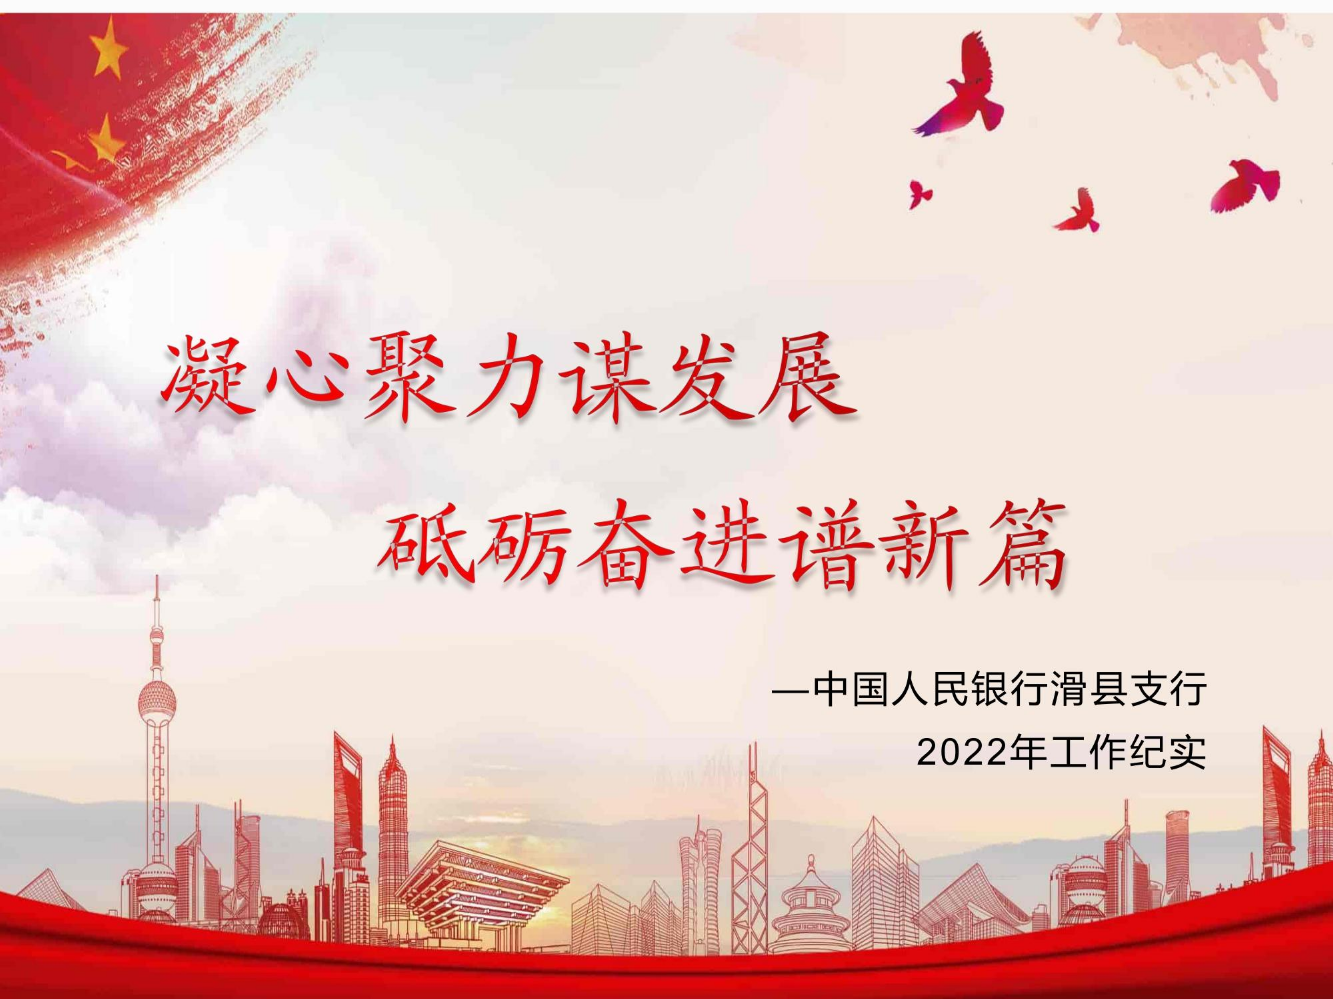 中国人民银行滑县支行2022年工作纪实